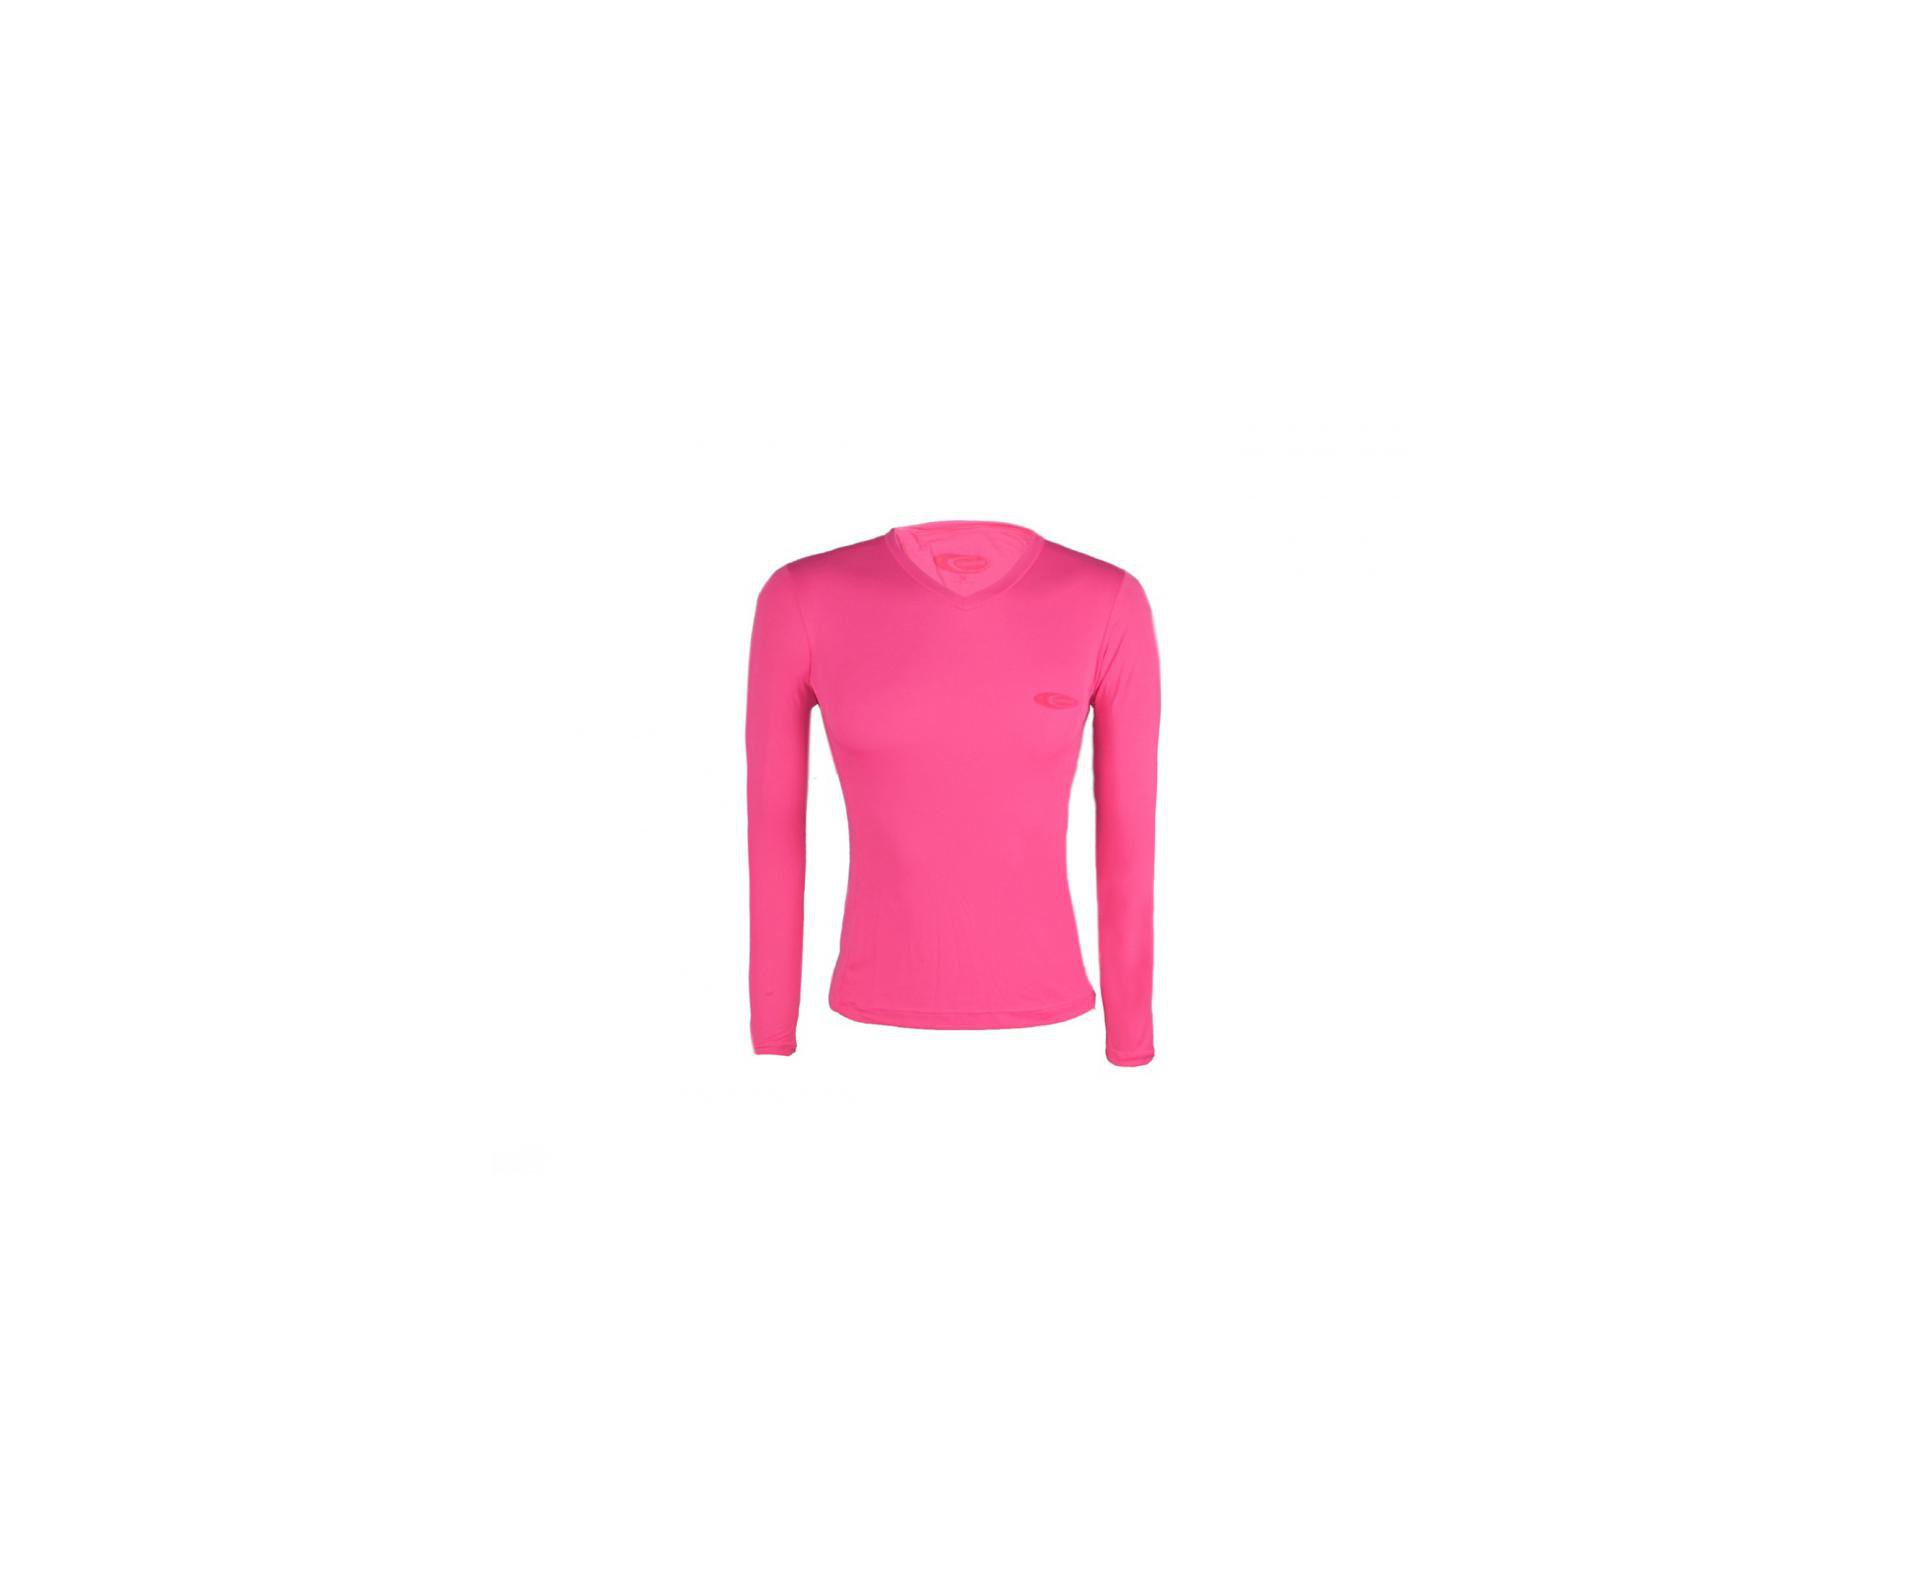 Camiseta Softline Feminina Rosa - Proteção Uva/uvb 50+ Fps - Cardume - PP